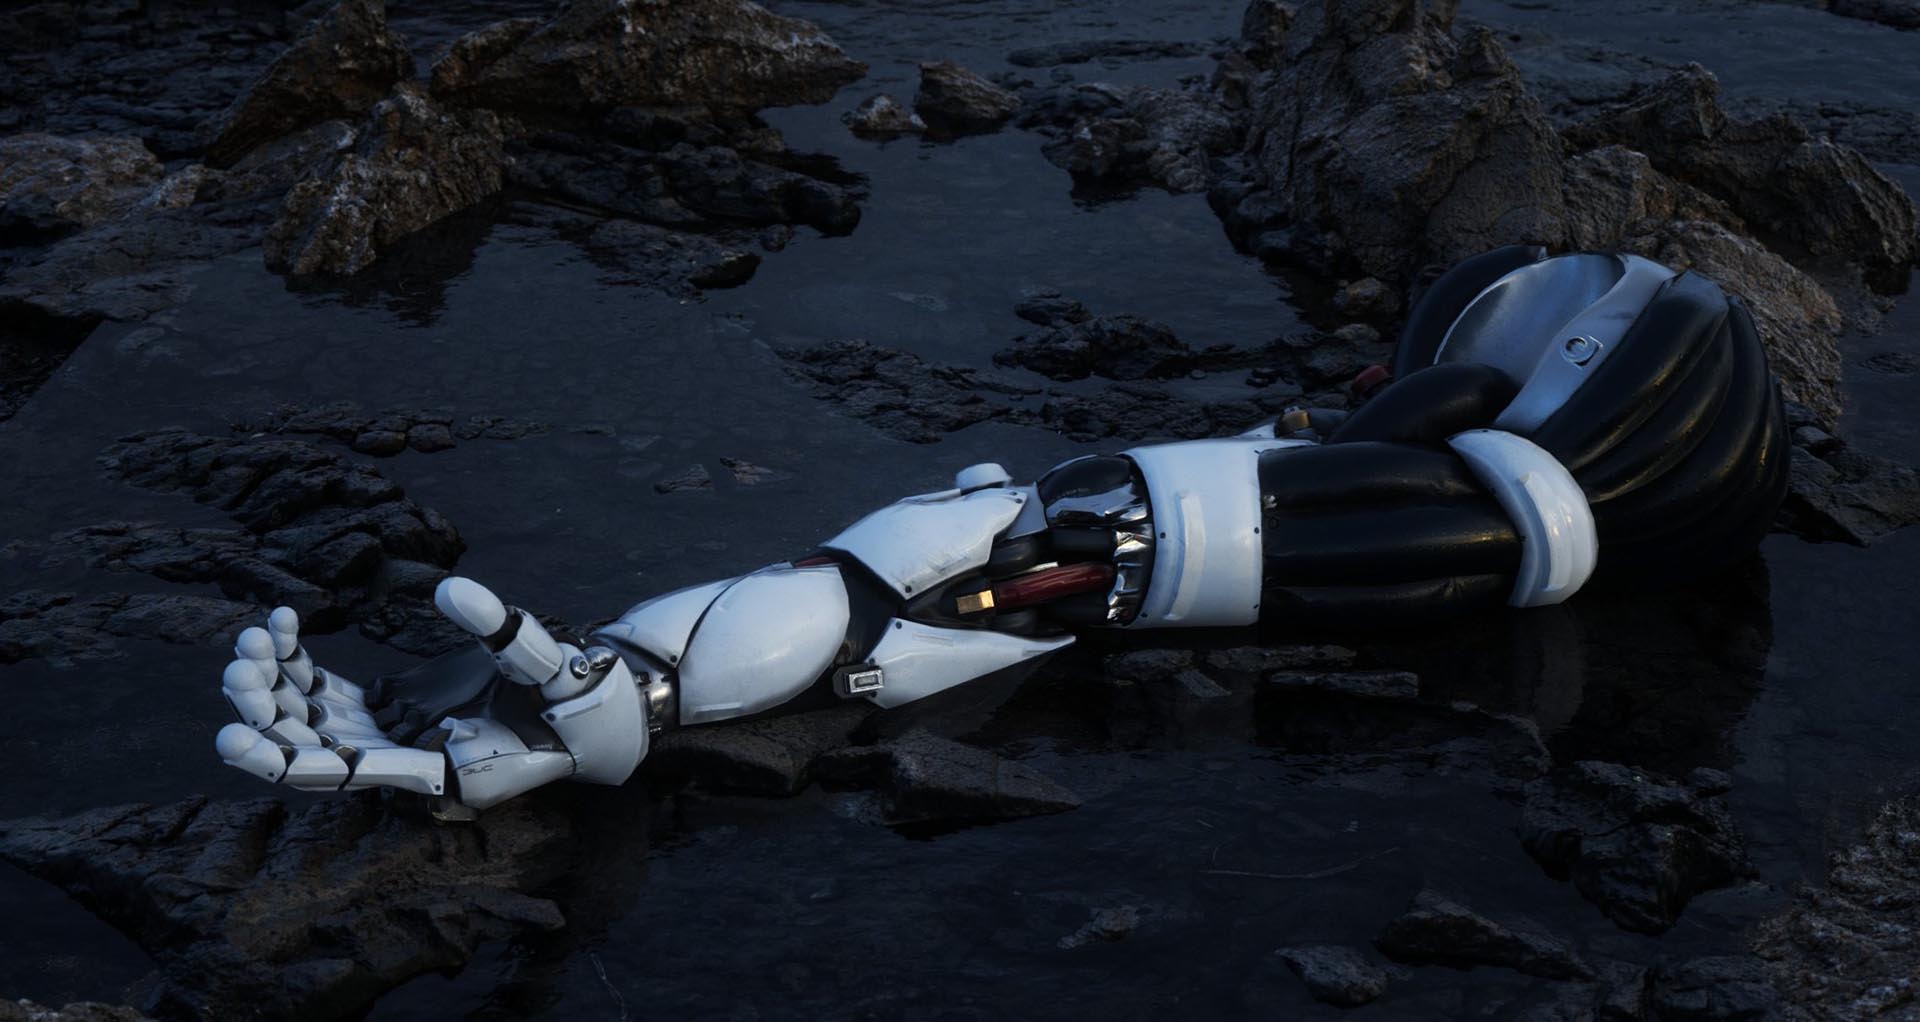 AI robot arm, trasig, ligger på marken